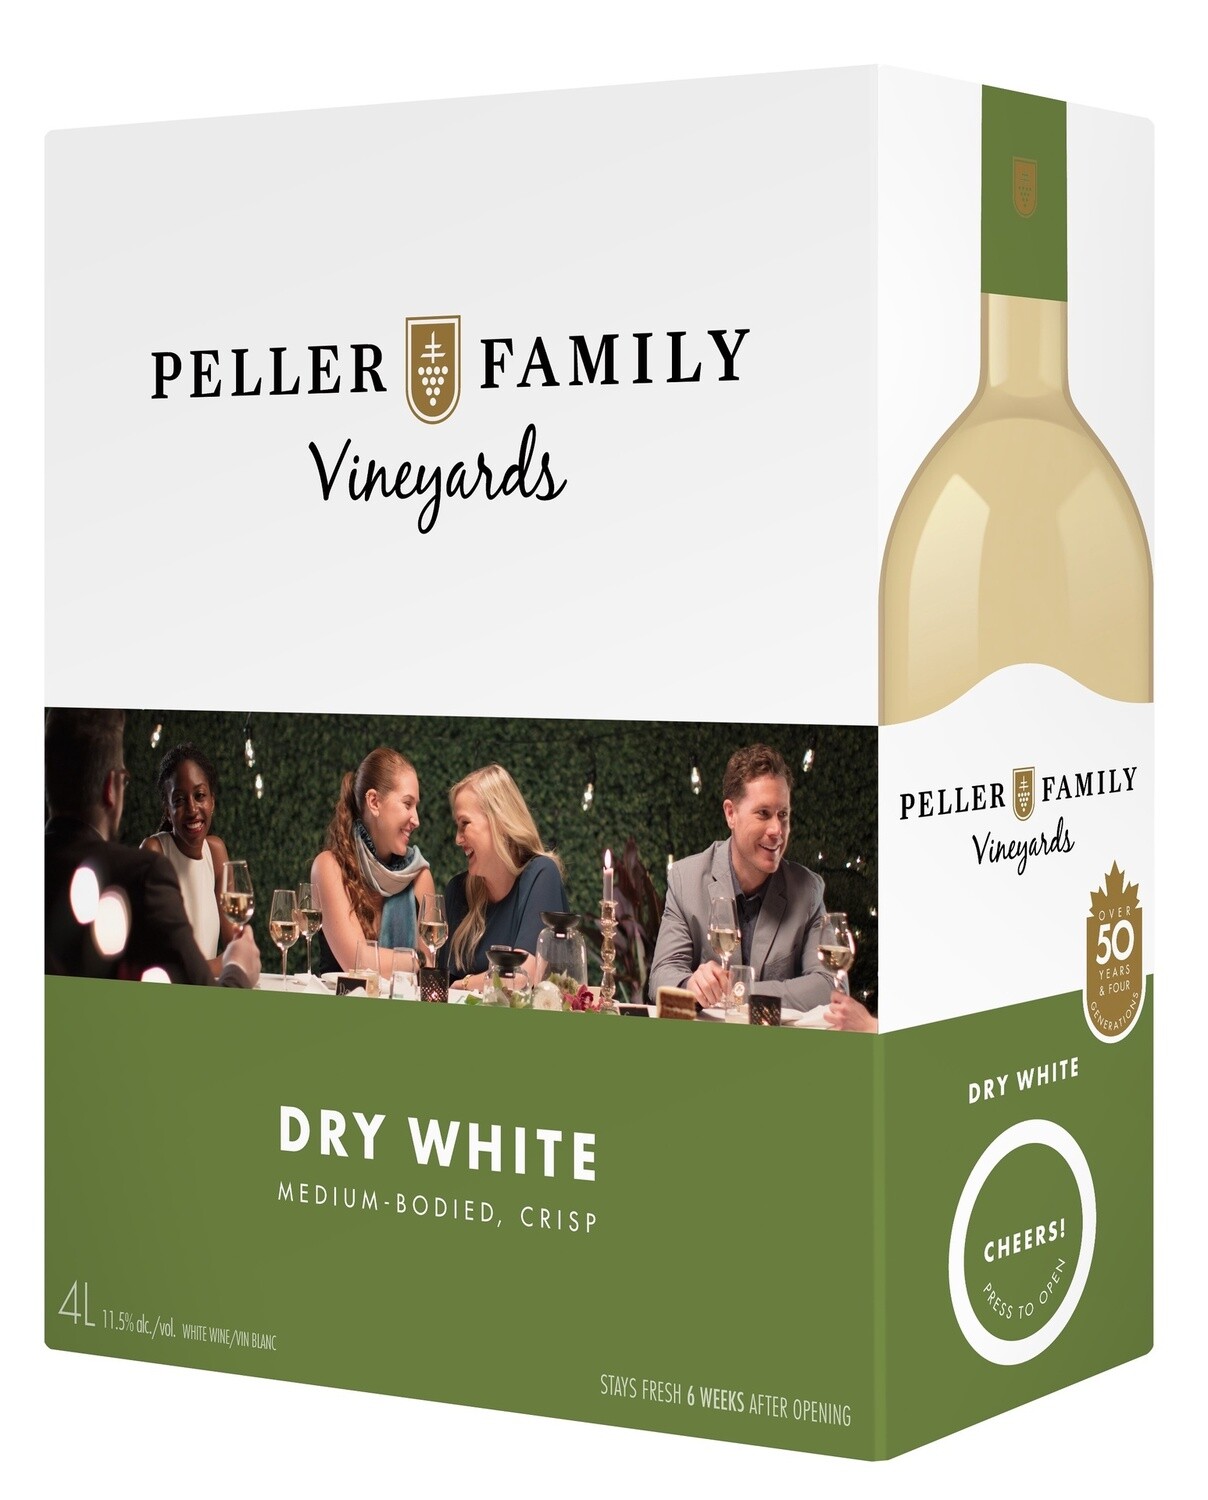 PELLER FAMILY VINEYARDS DRY WHITE, Size: 4 L